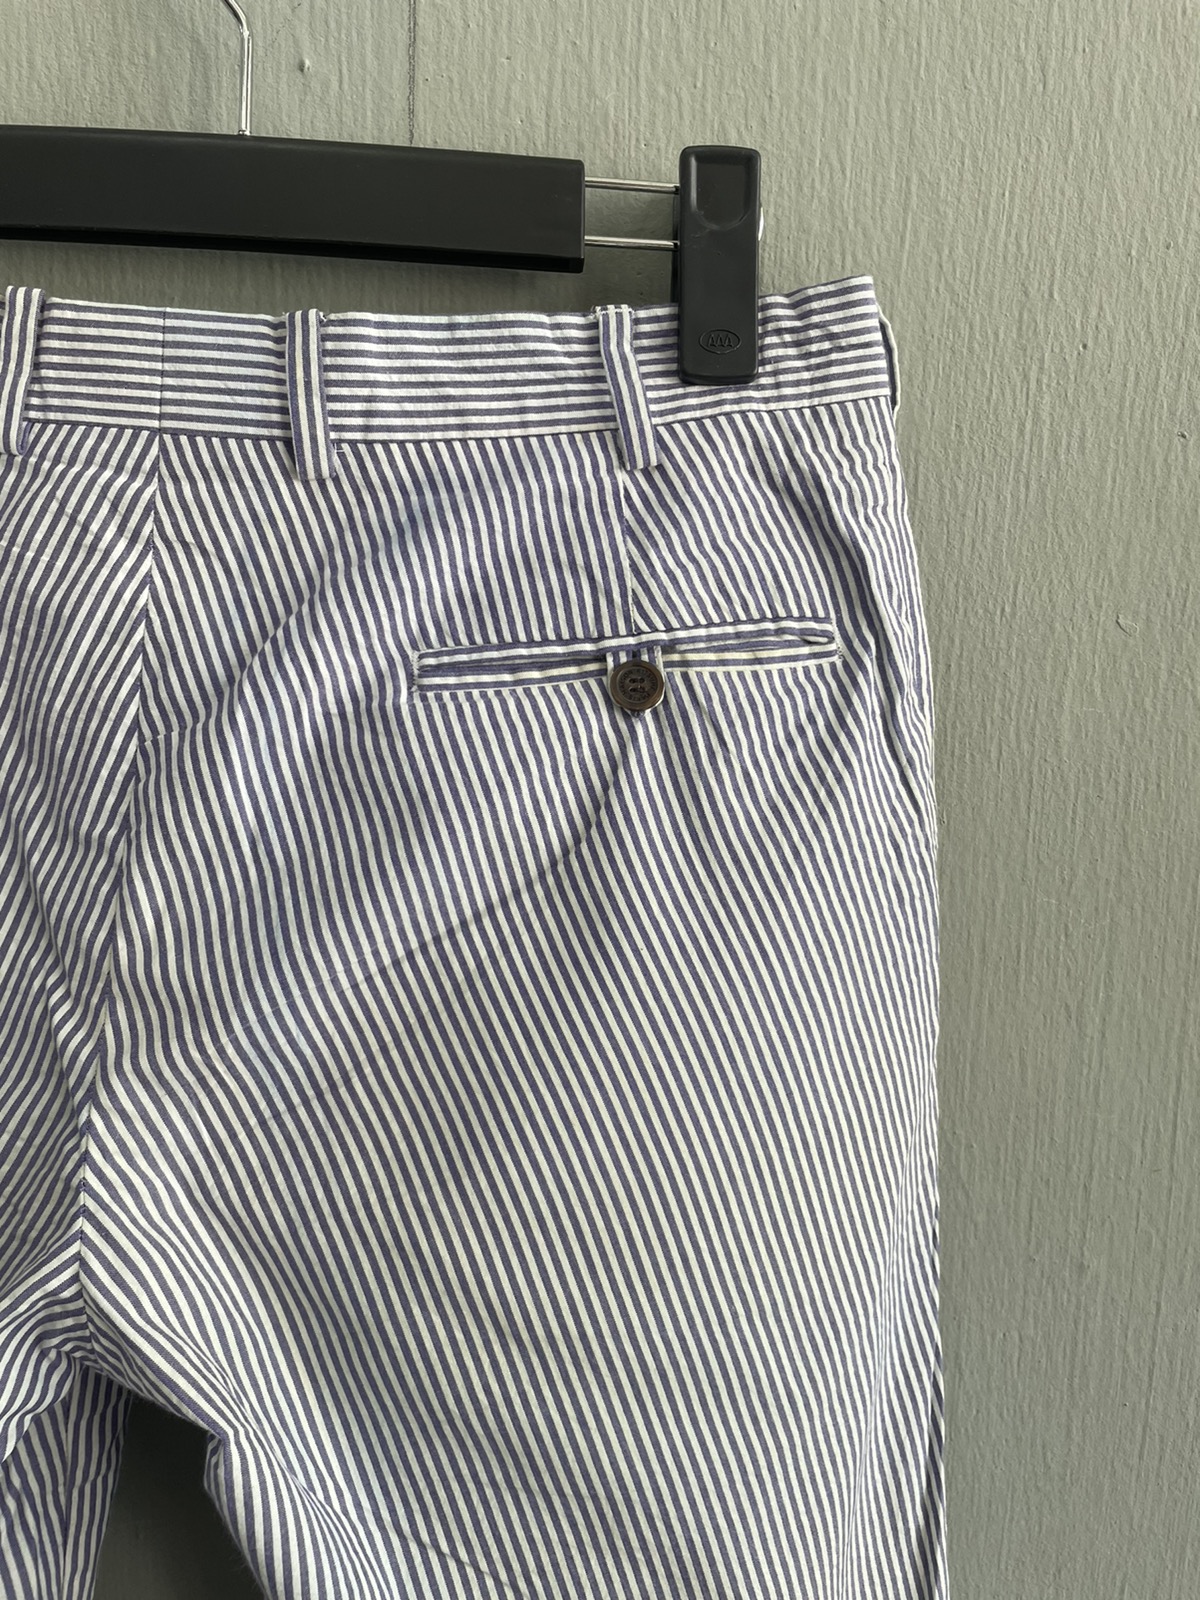 ‼️FINAL PRICE DROP‼️Maison Kitsune Stripe Casual Pants - 7